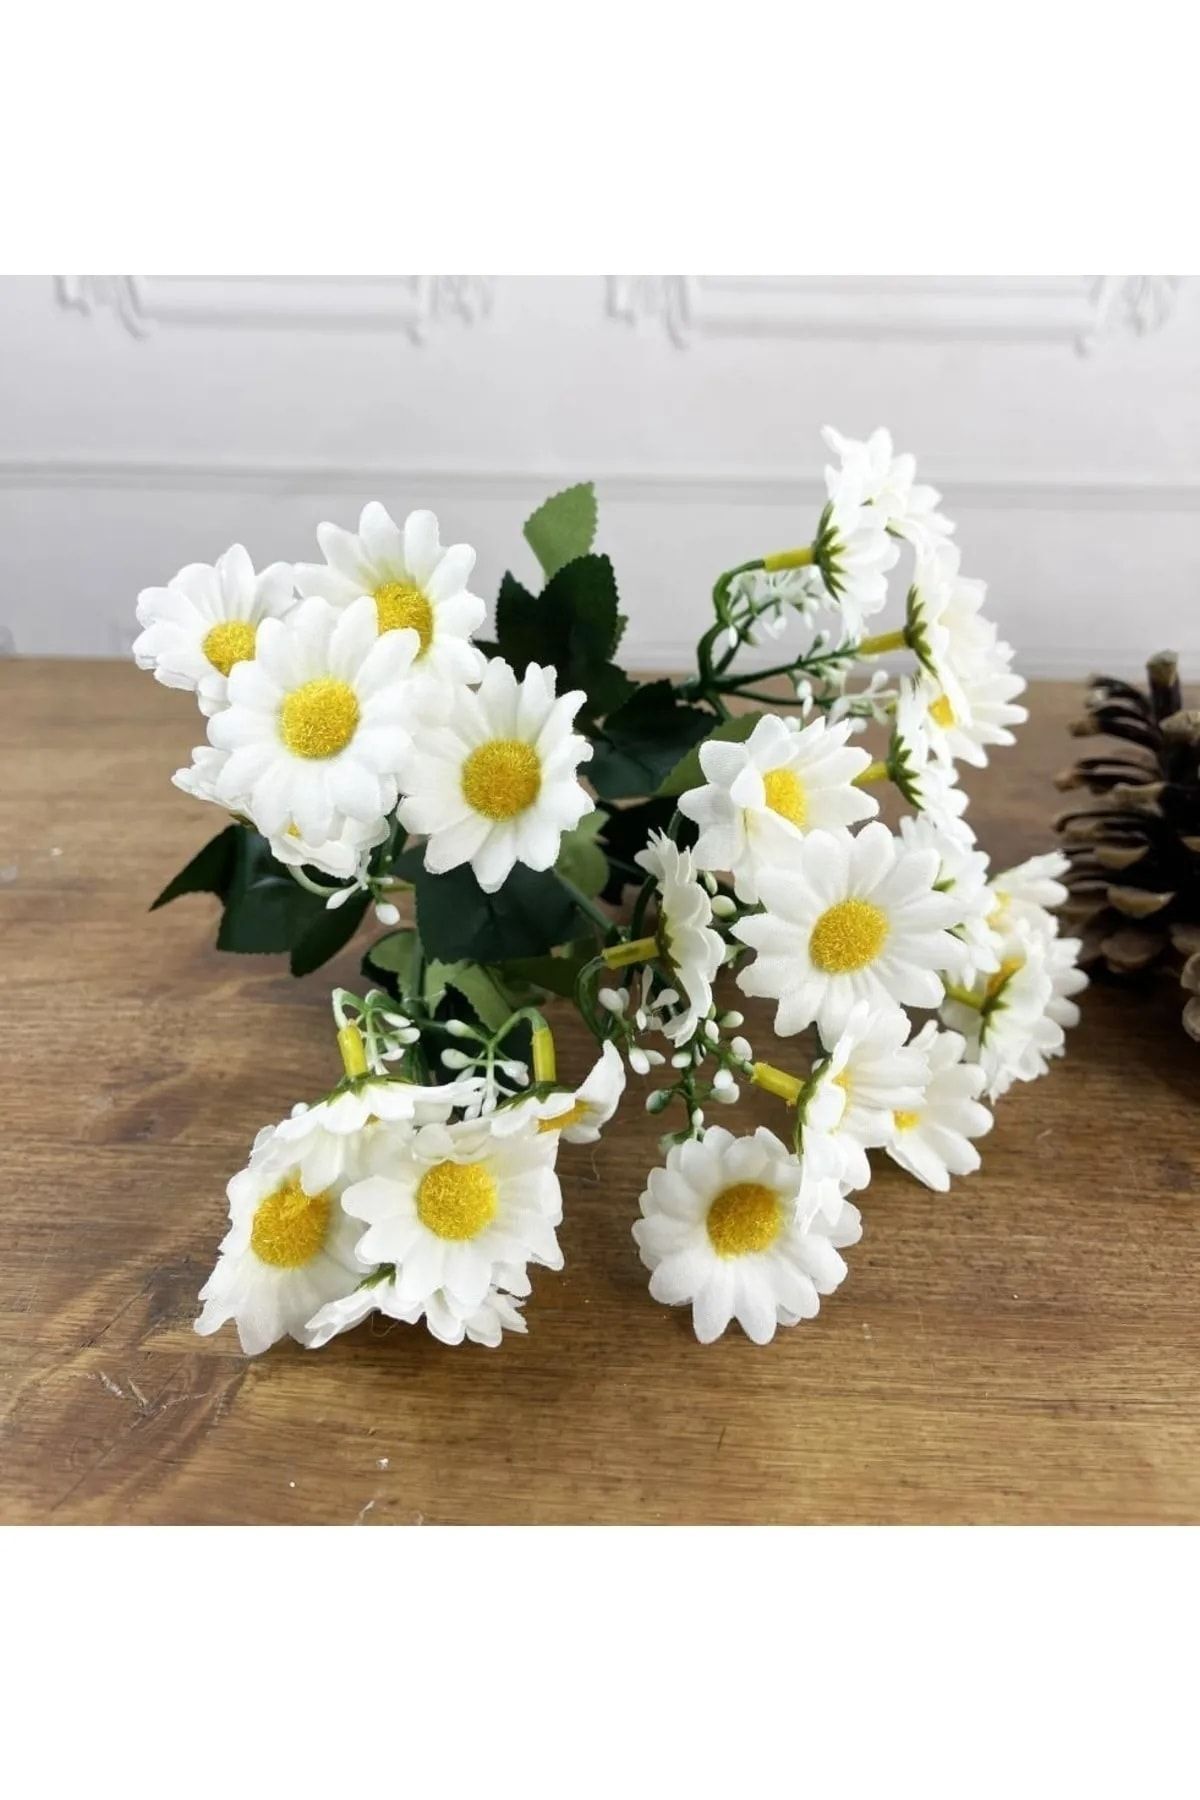 LUZAB Beyaz Papatya Yapay Çiçek Gerçek Görünümlü 5 Dallı 25 Çiçekli